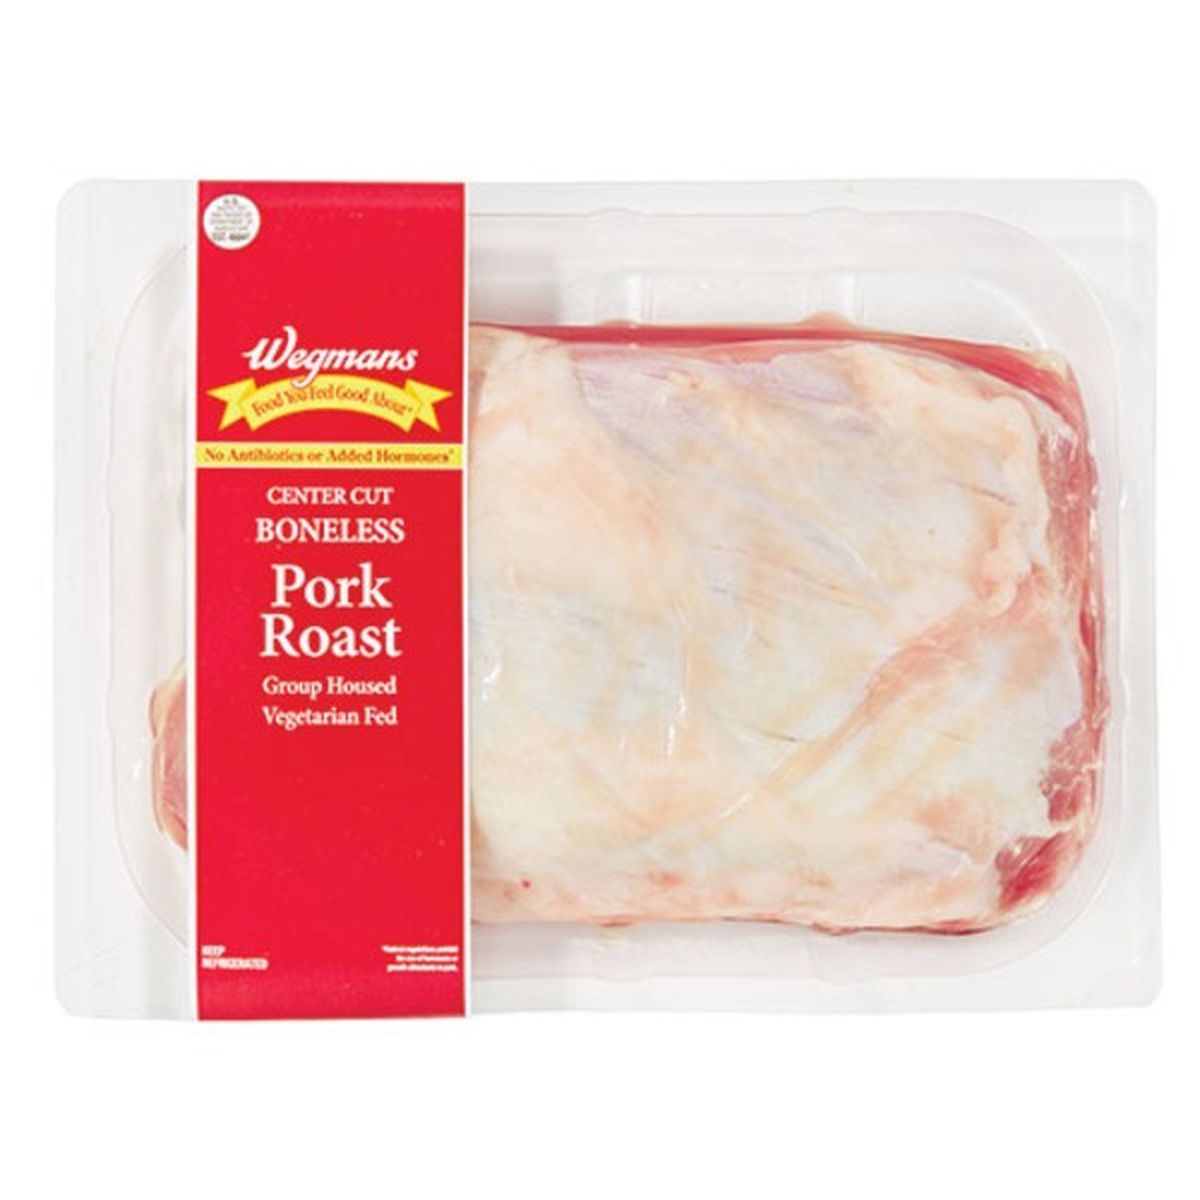 Calories in Wegmans Center Cut Boneless Pork Roast